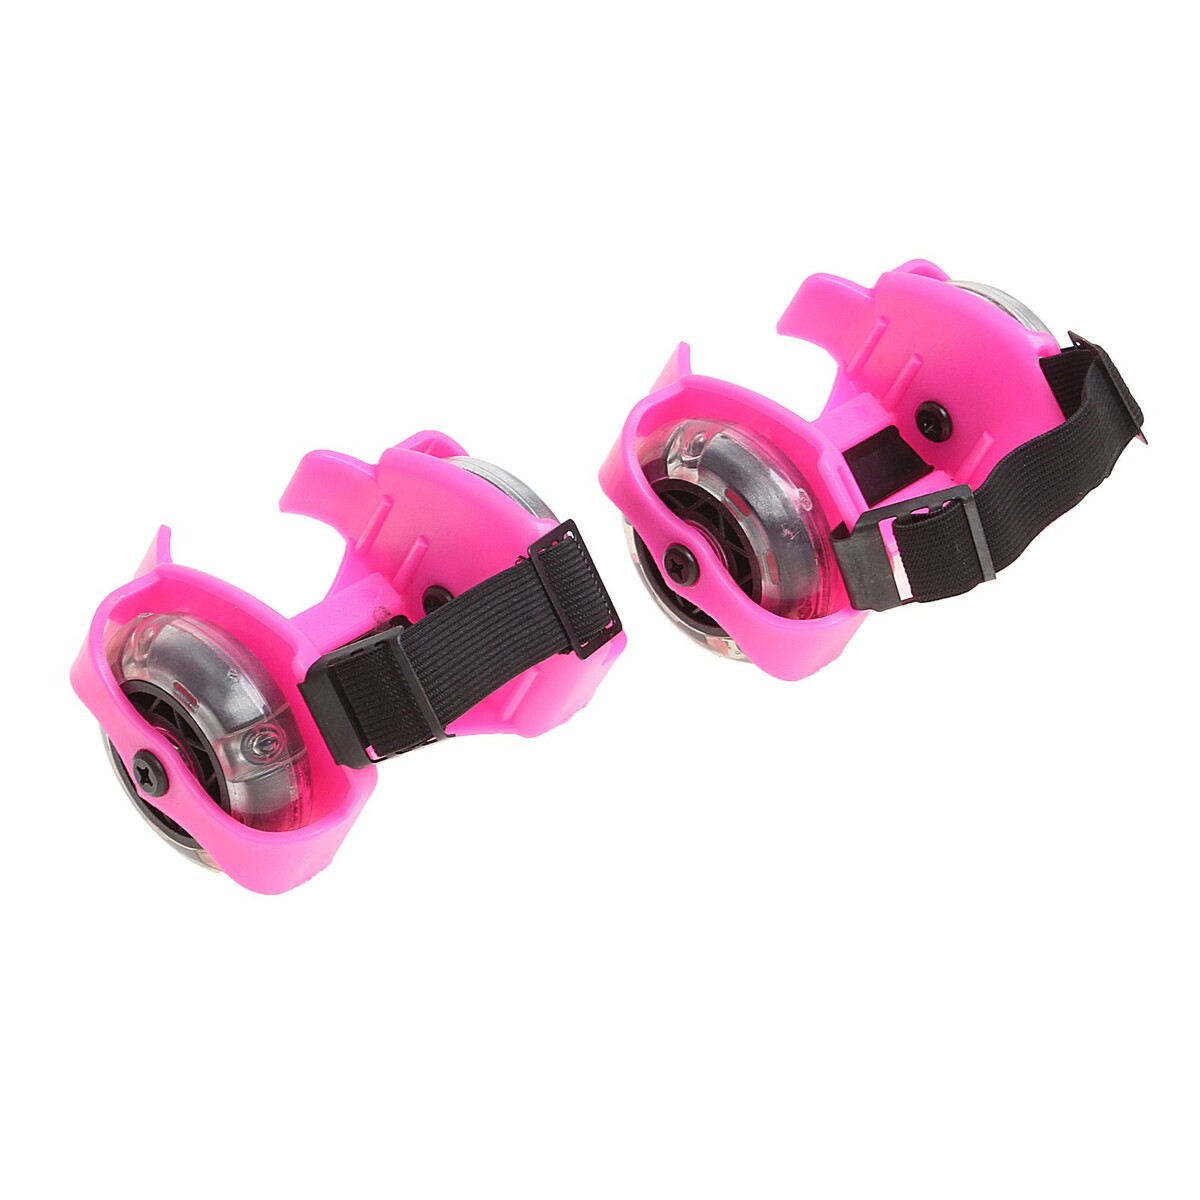 Ролики для обуви раздвижные onlitop, светящиеся колеса рvc 70 мм, ширина 6-10 см, до 70 кг, цвет розовый